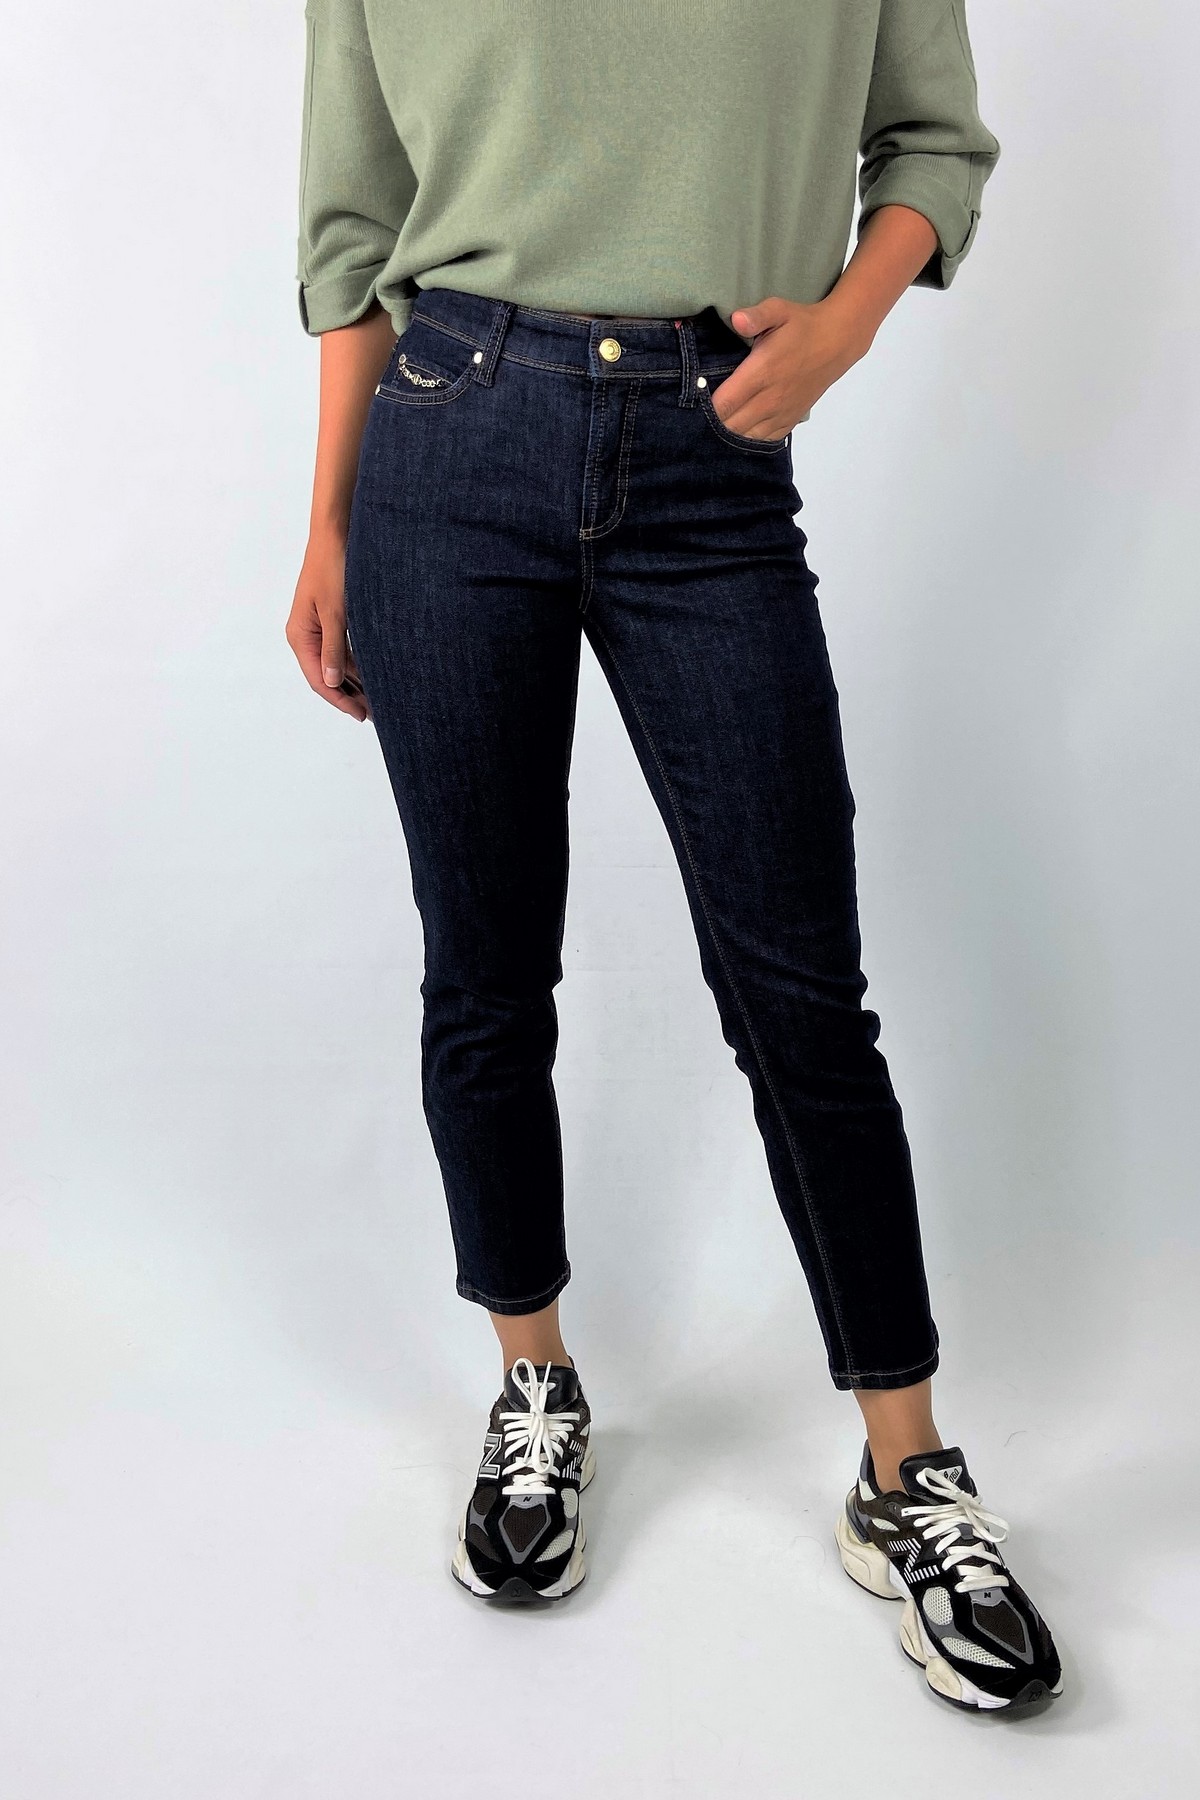 Jeans ketting zakje in de kleur dark blue van het merk Cambio